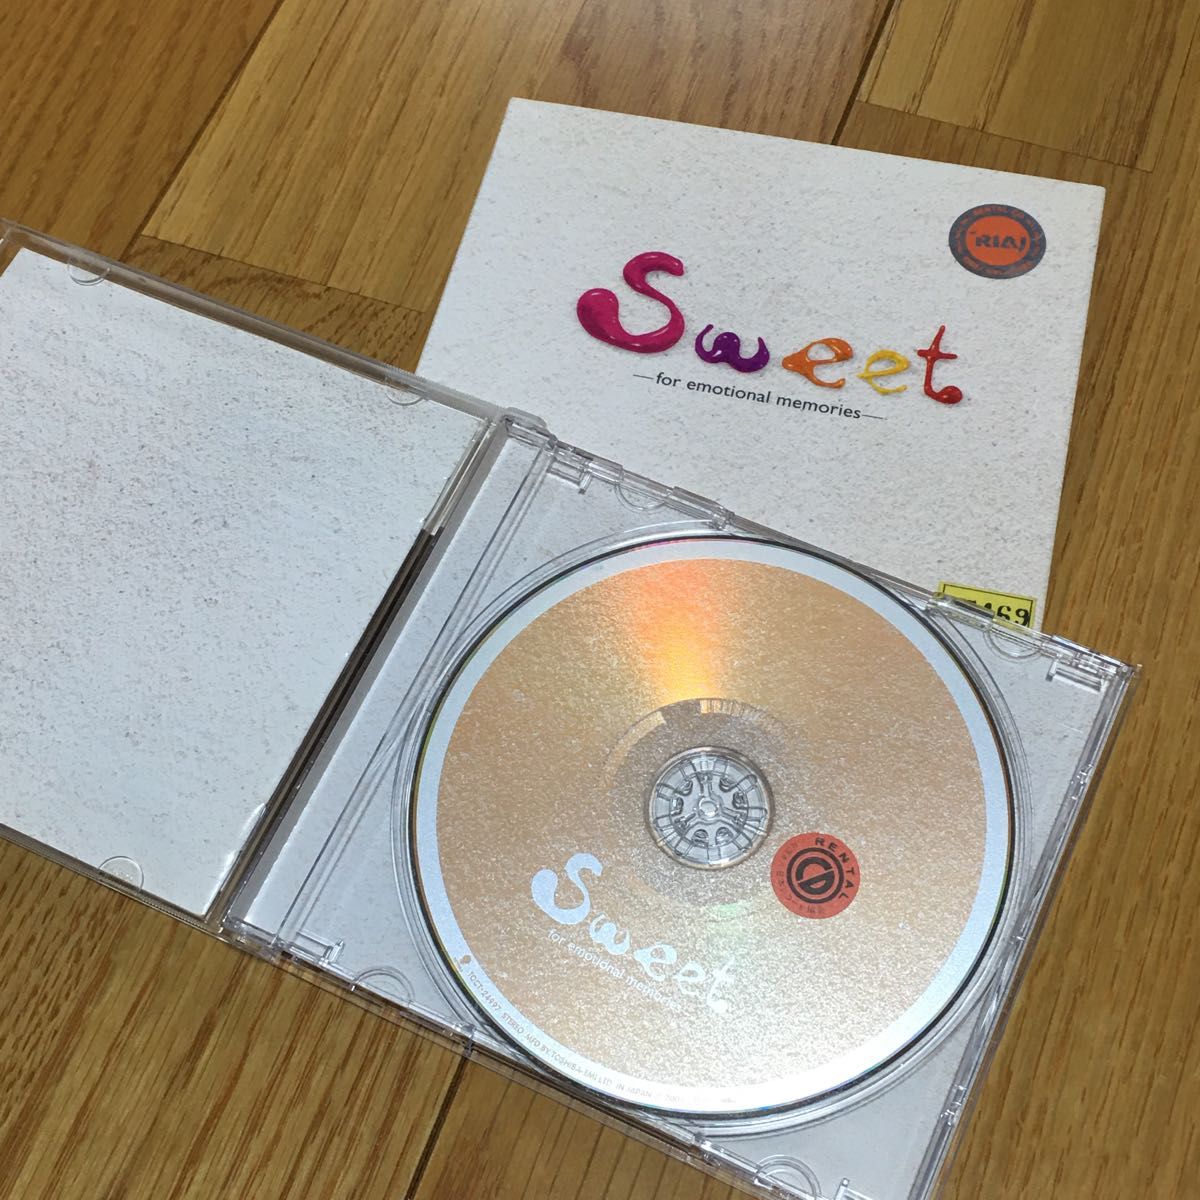 used CD Sweet ドラマのような恋がしたいオムニバス中古CD